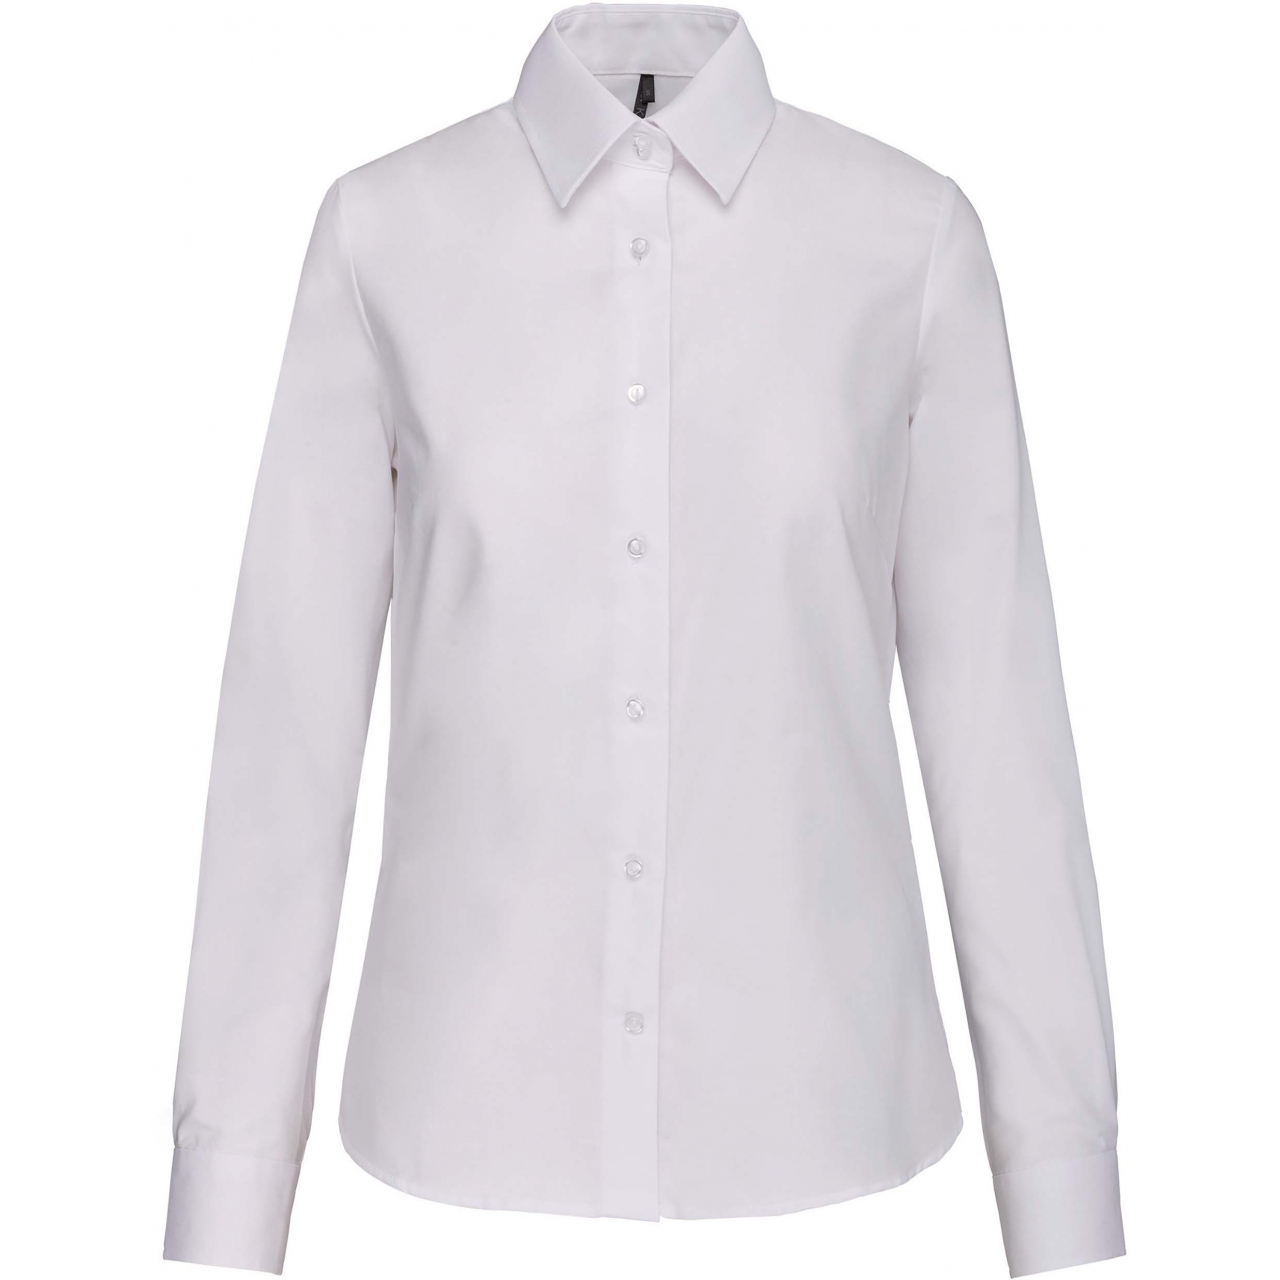 Košile dámská s dlouhým rukávem Kariban Oxford - bílá, XL